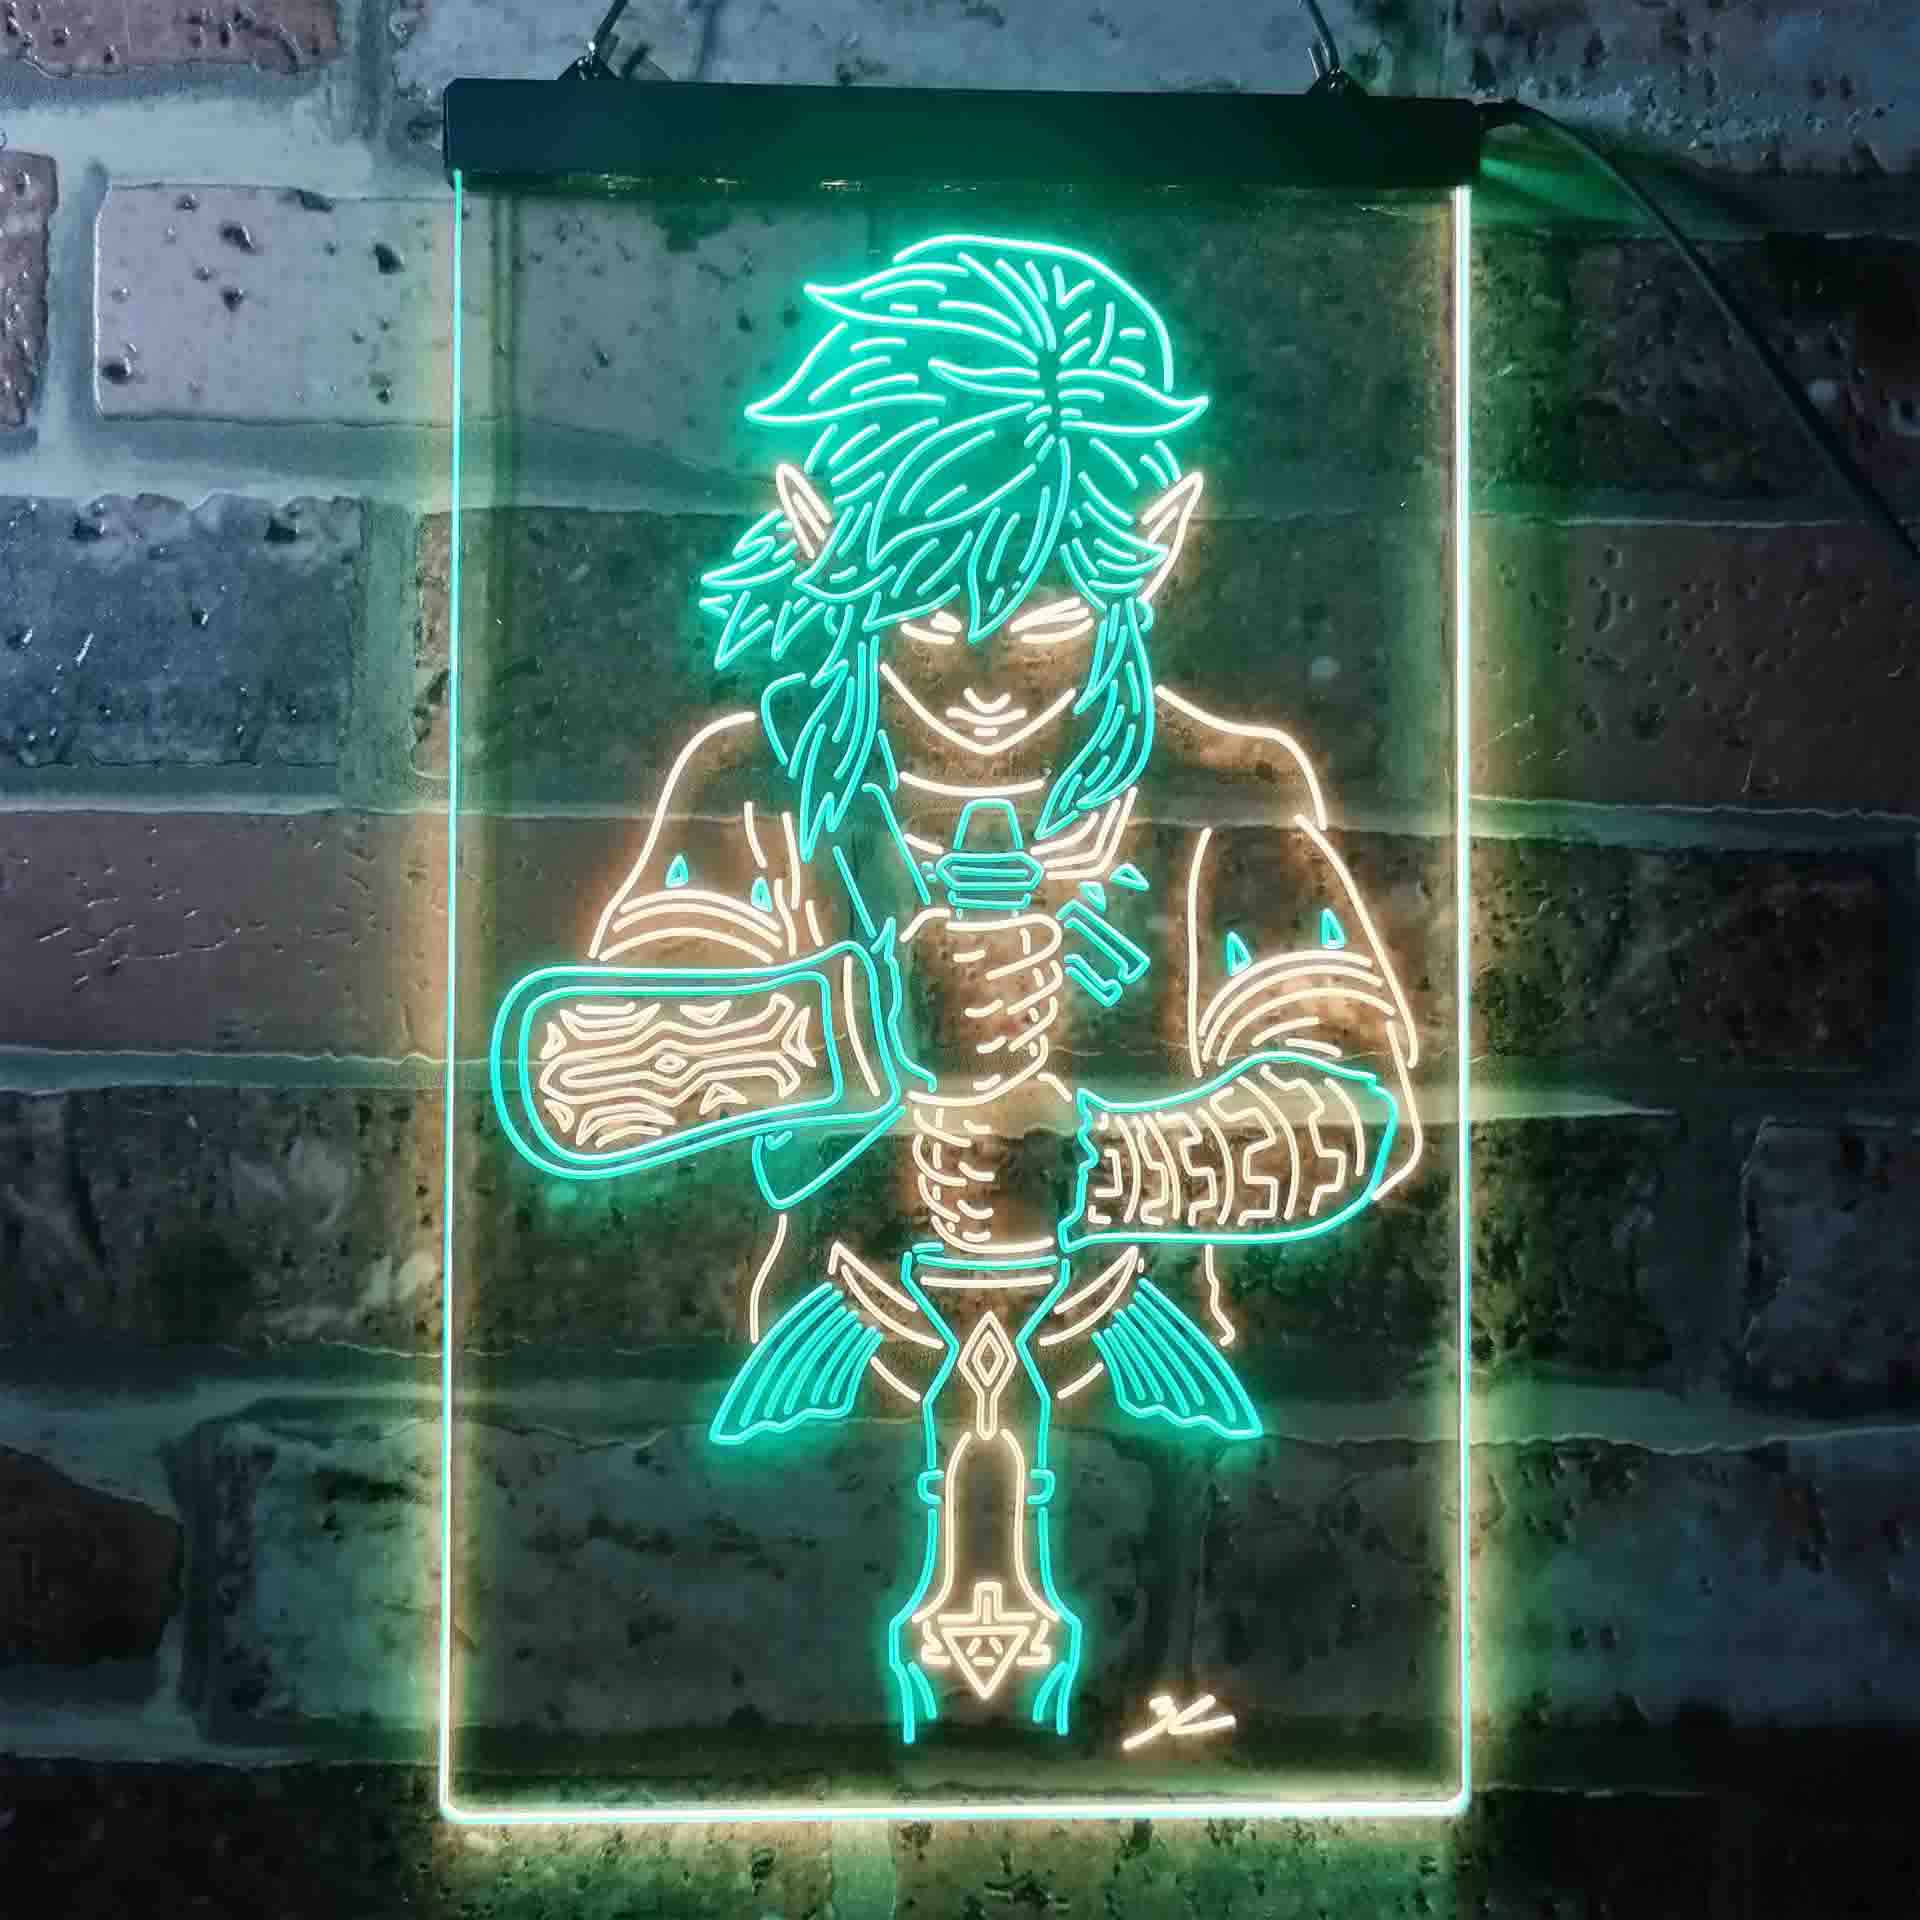 Legend Of Zelda Neon LED Sign